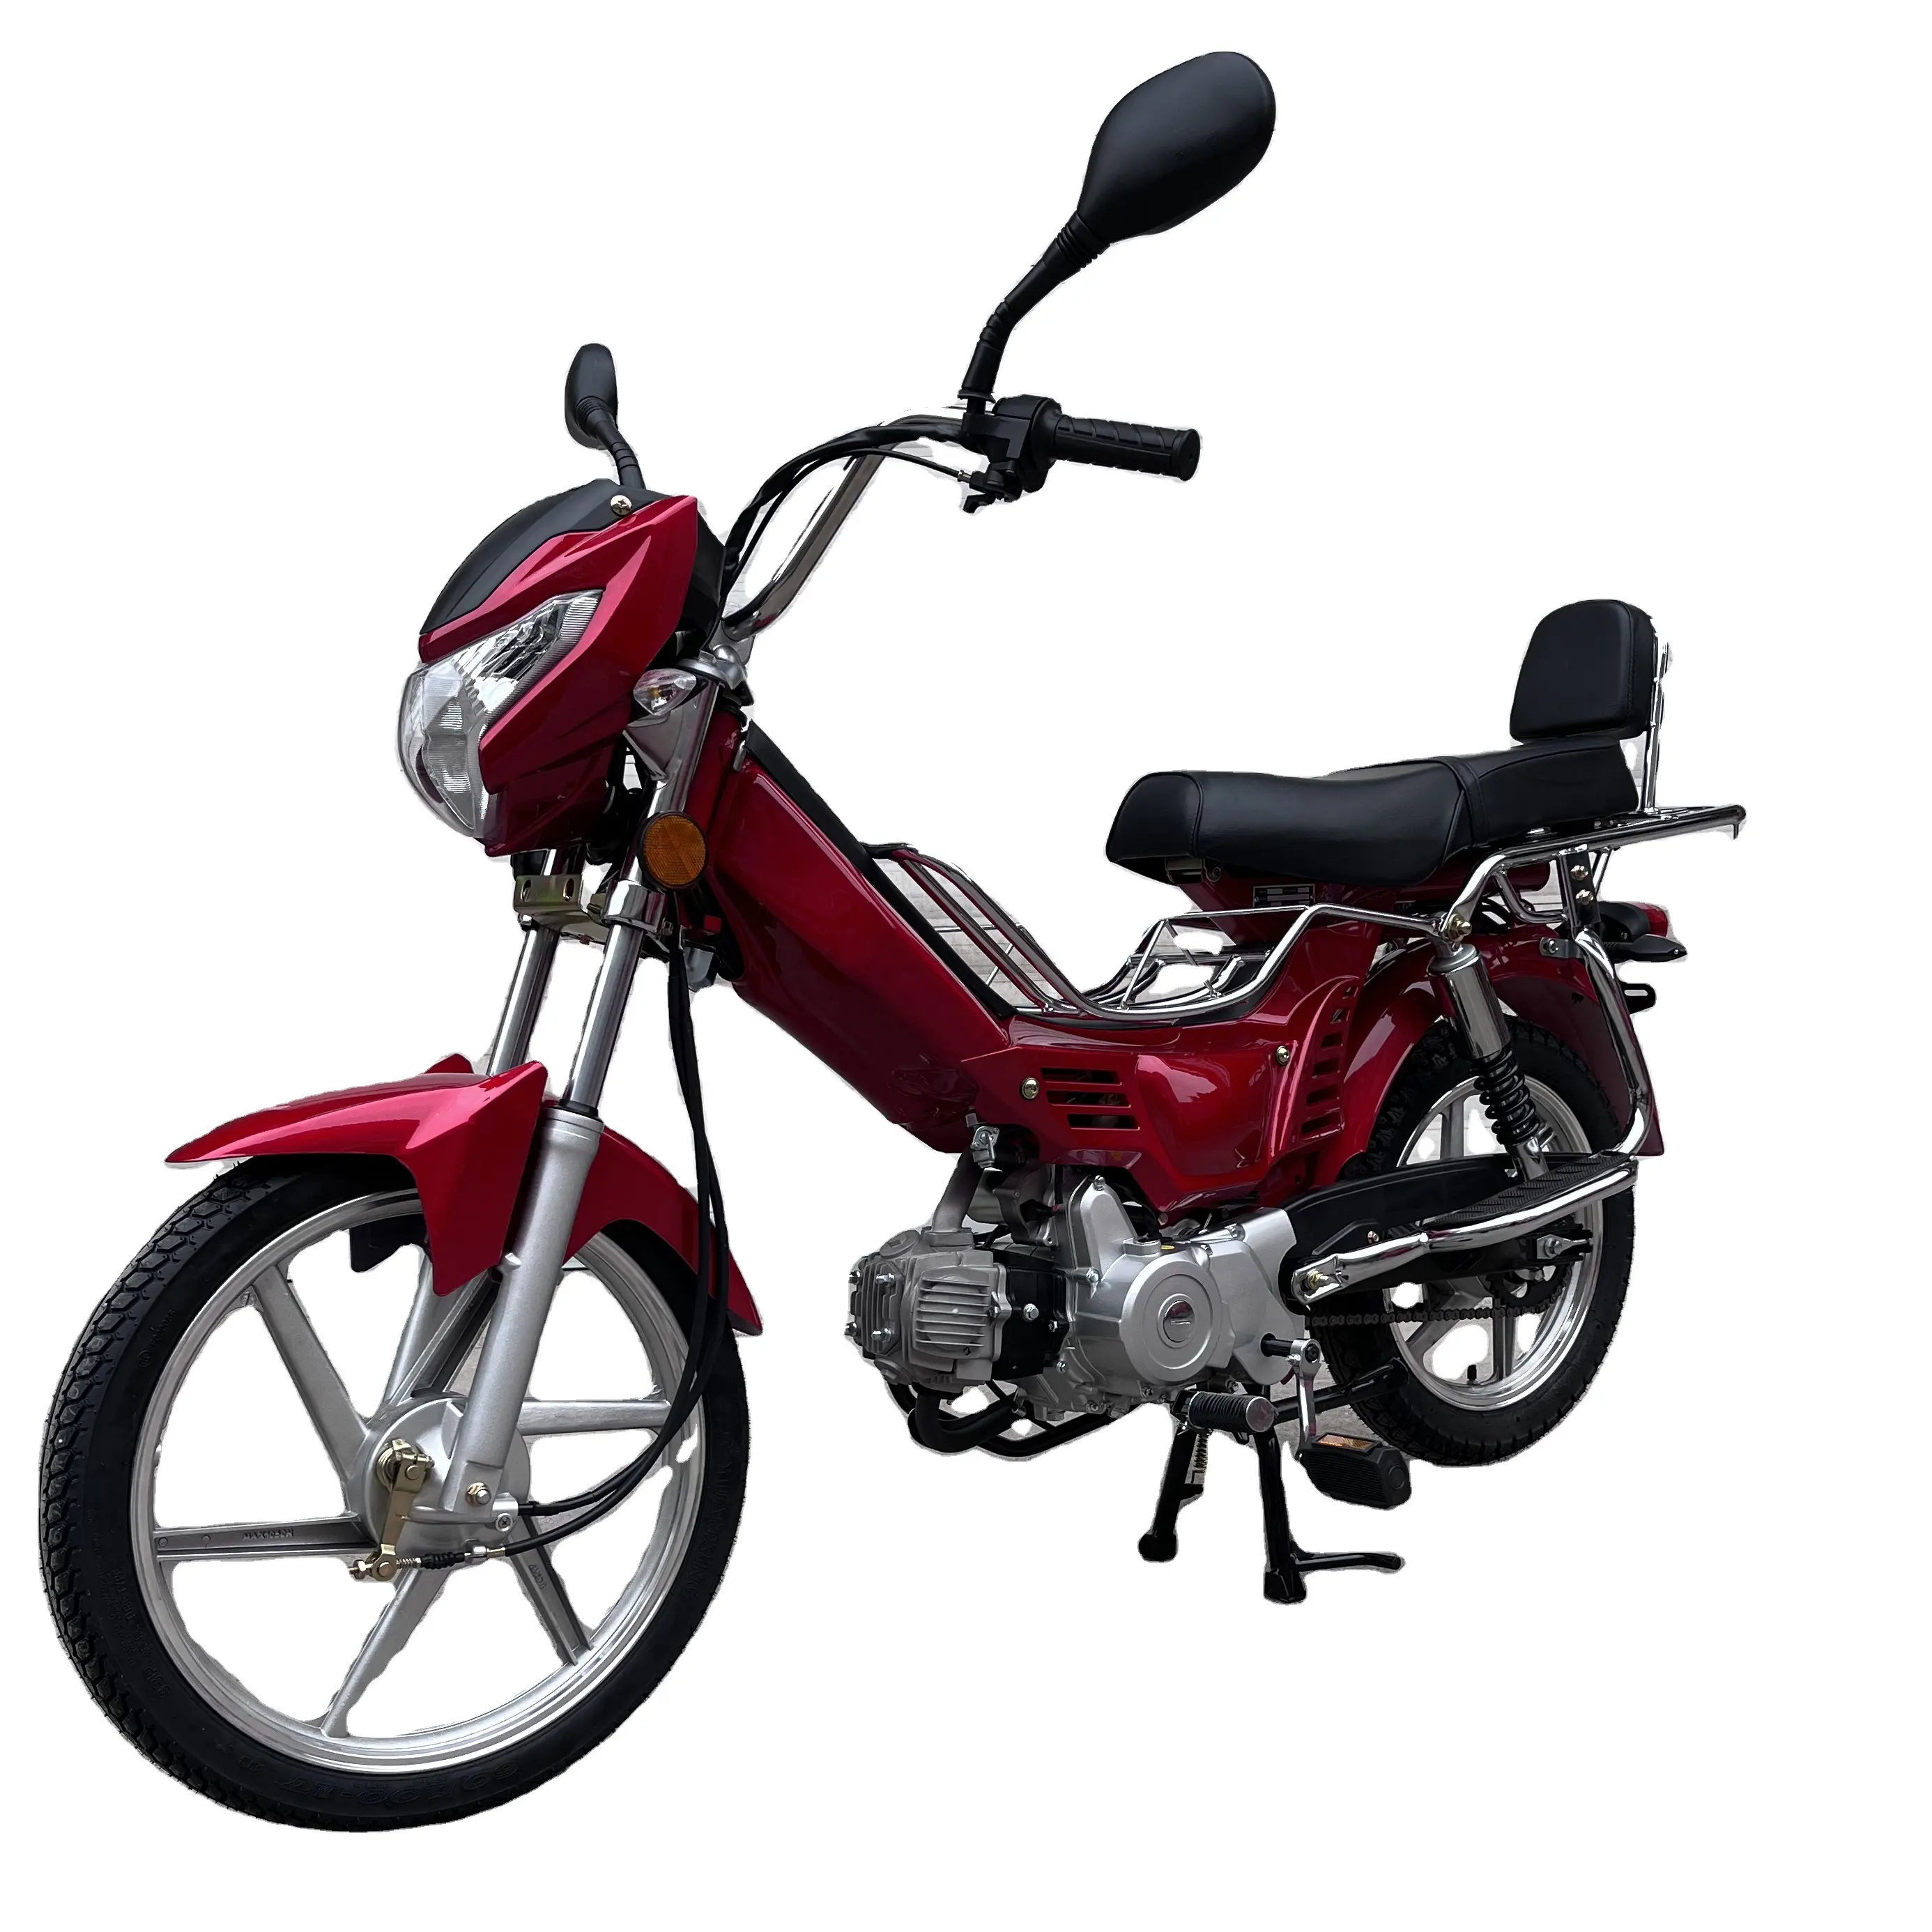 חם מכירות אופנוע מיני זול 50cc moped אופנוע 70cc